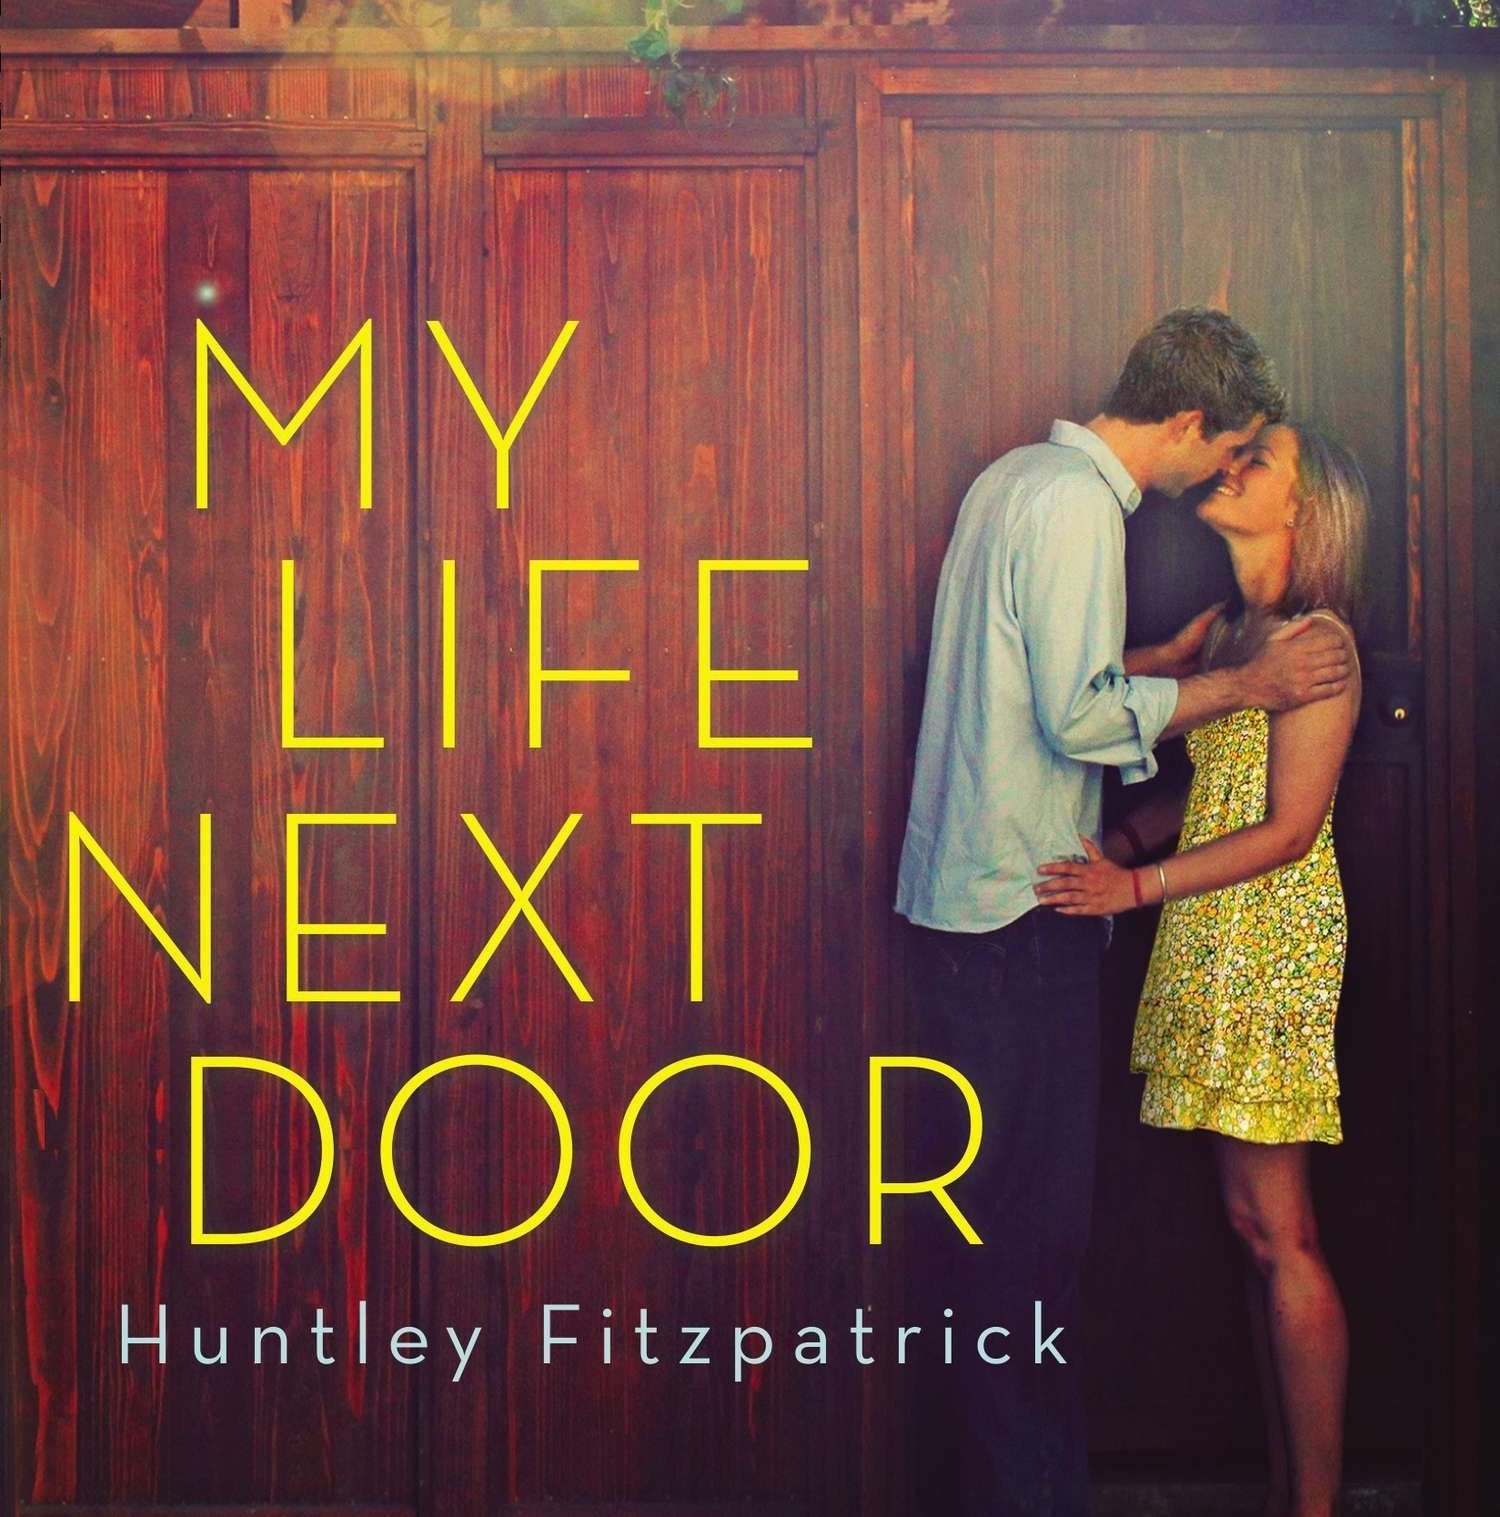 Books are in my life. My Life the last next Door книга. Хантли Фитцпатрик книги. The boy next Door. My Life next Door на фиолетово фоне.